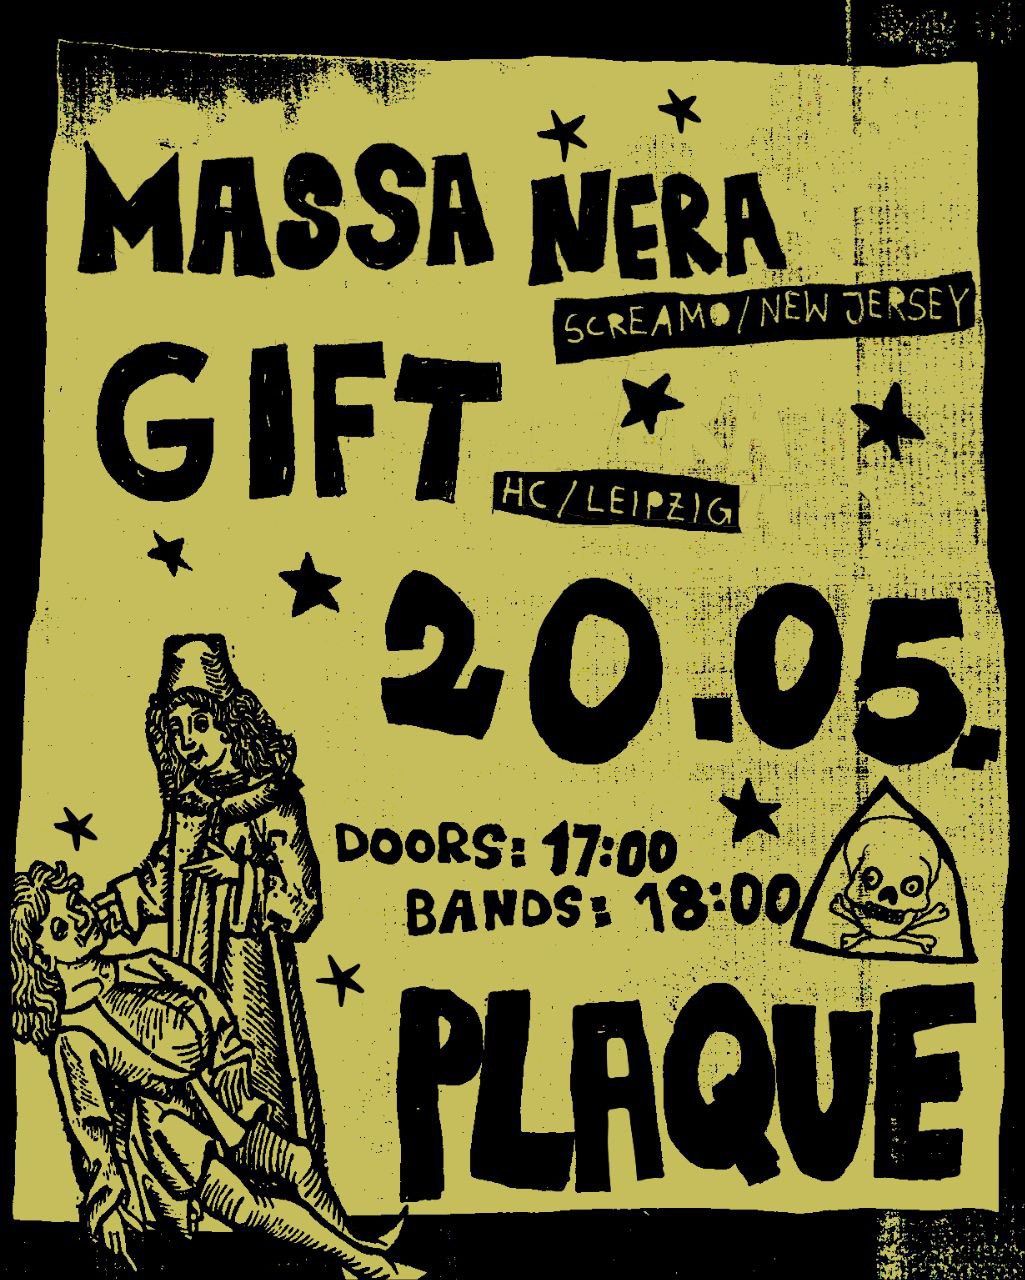 Massa Nera + G i f t @ Plaque, LE